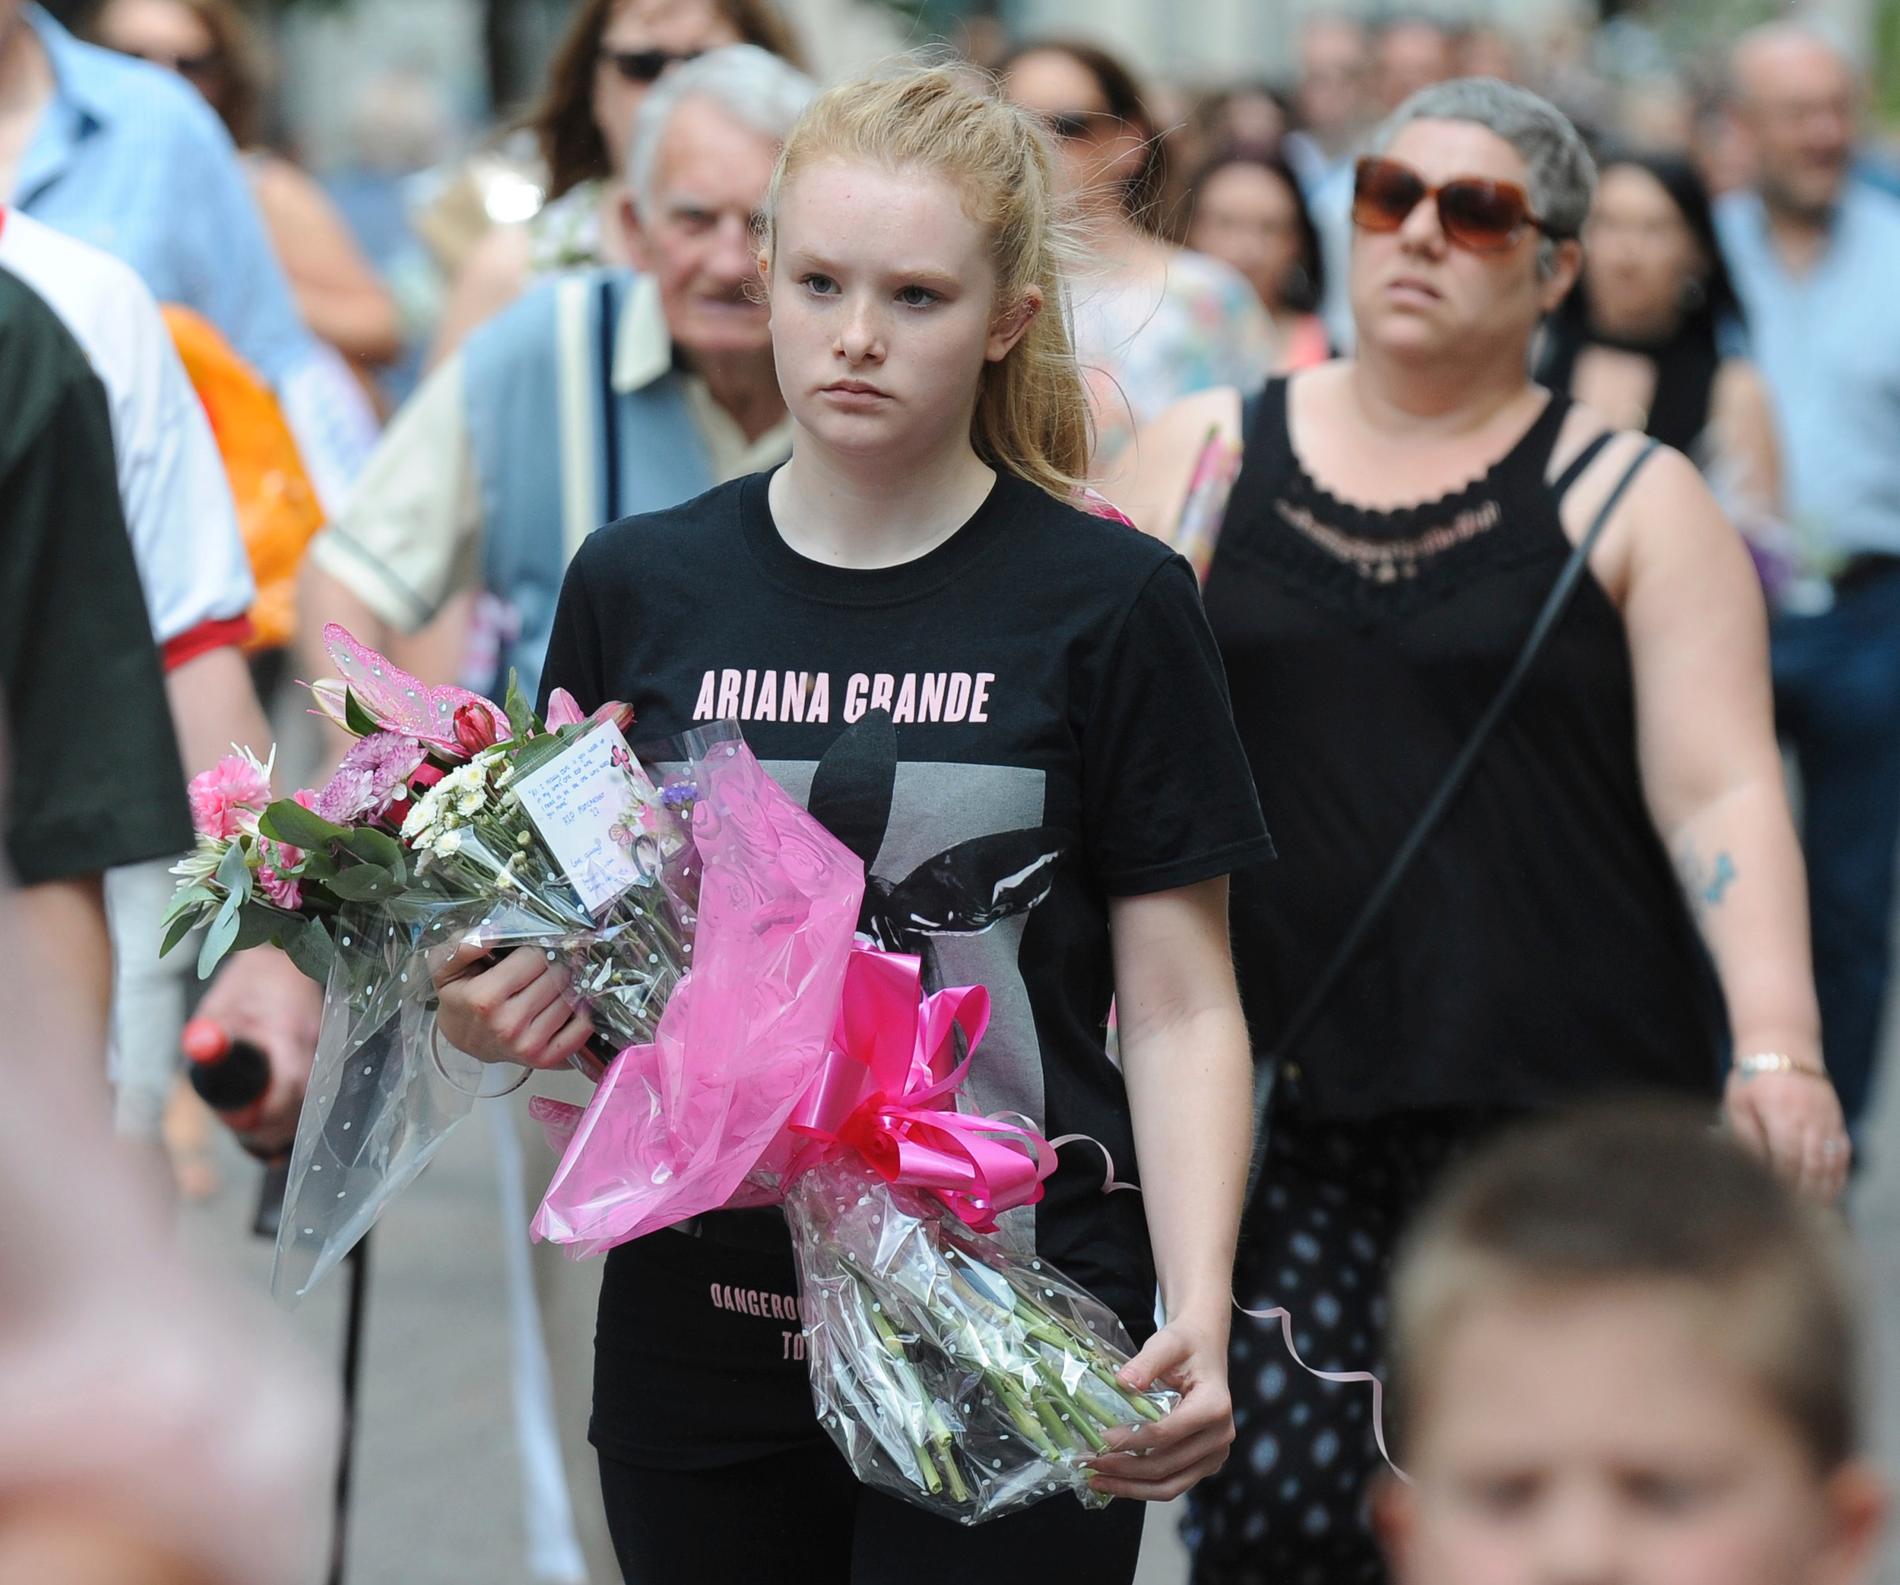 Ett Ariana Grande-fan är på väg till en minneshögtid som hölls i lördags för offren för självmordsdådet på Manchester Arena i förra veckan.